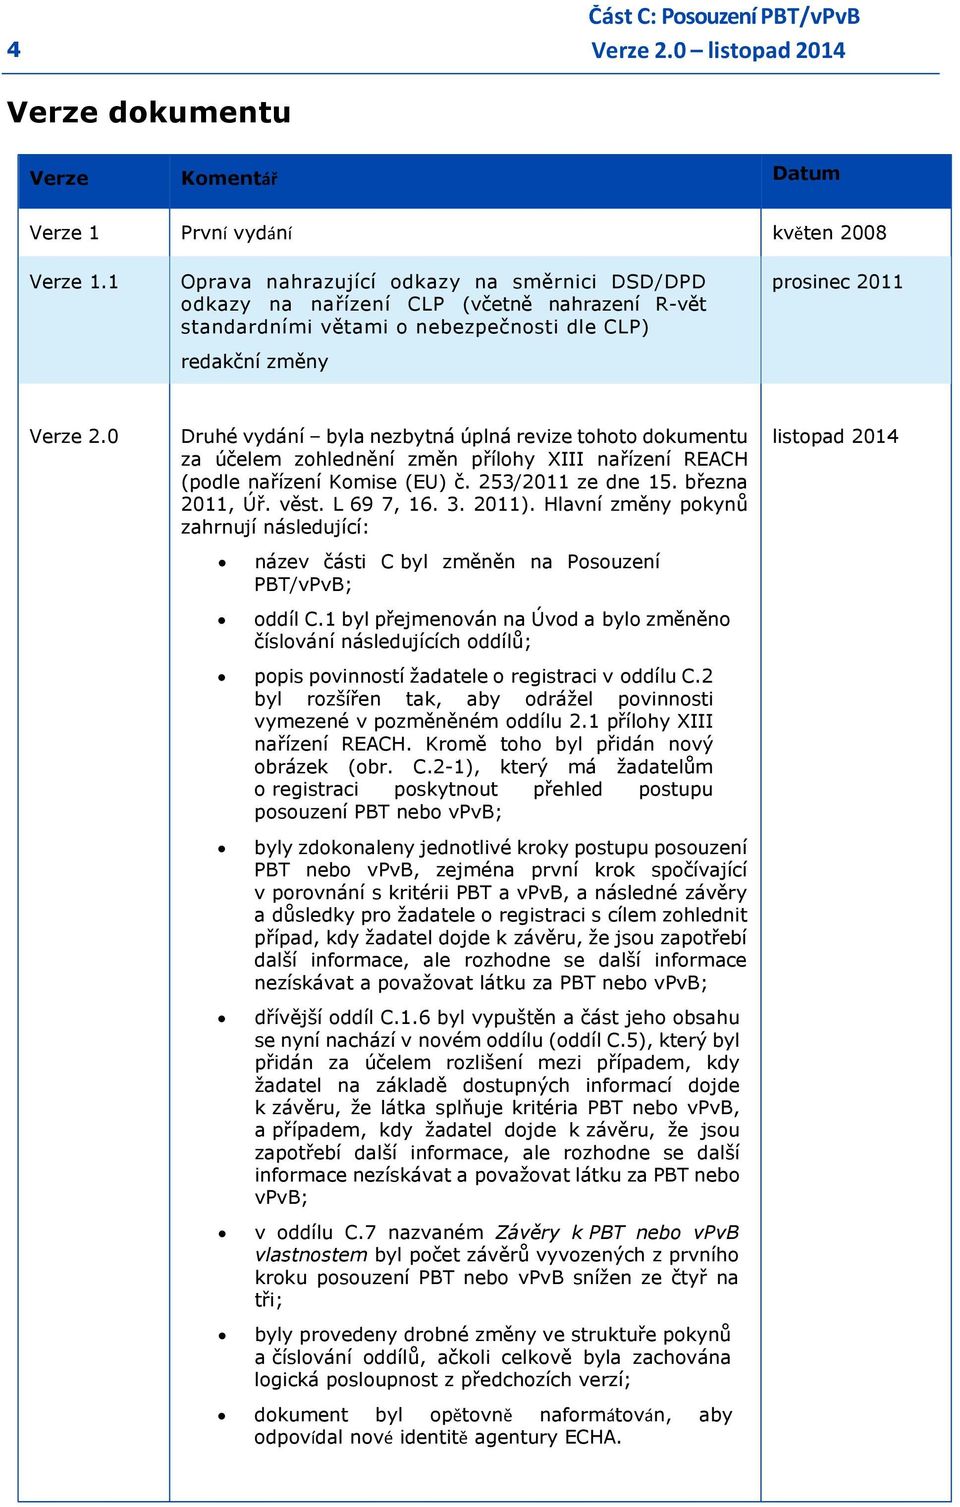 0 Druhé vydání byla nezbytná úplná revize tohoto dokumentu za účelem zohlednění změn přílohy XIII nařízení REACH (podle nařízení Komise (EU) č. 253/2011 ze dne 15. března 2011, Úř. věst. L 69 7, 16.